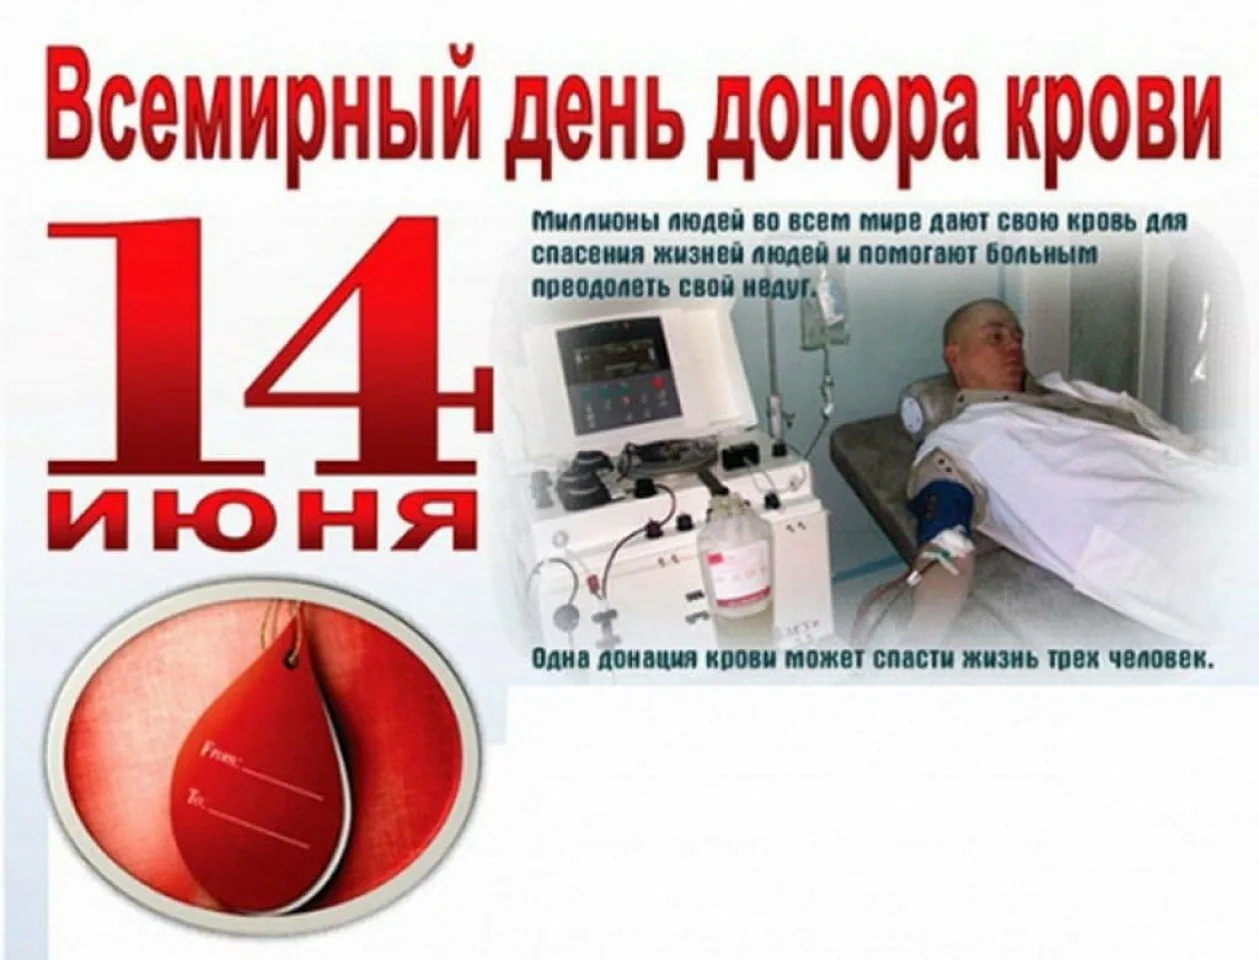 Всемирный день донора. 14 Июня Всемирный день донора крови. С днем донора поздравление. Всемирный день донора крови открытки. За донорство крови дают деньги